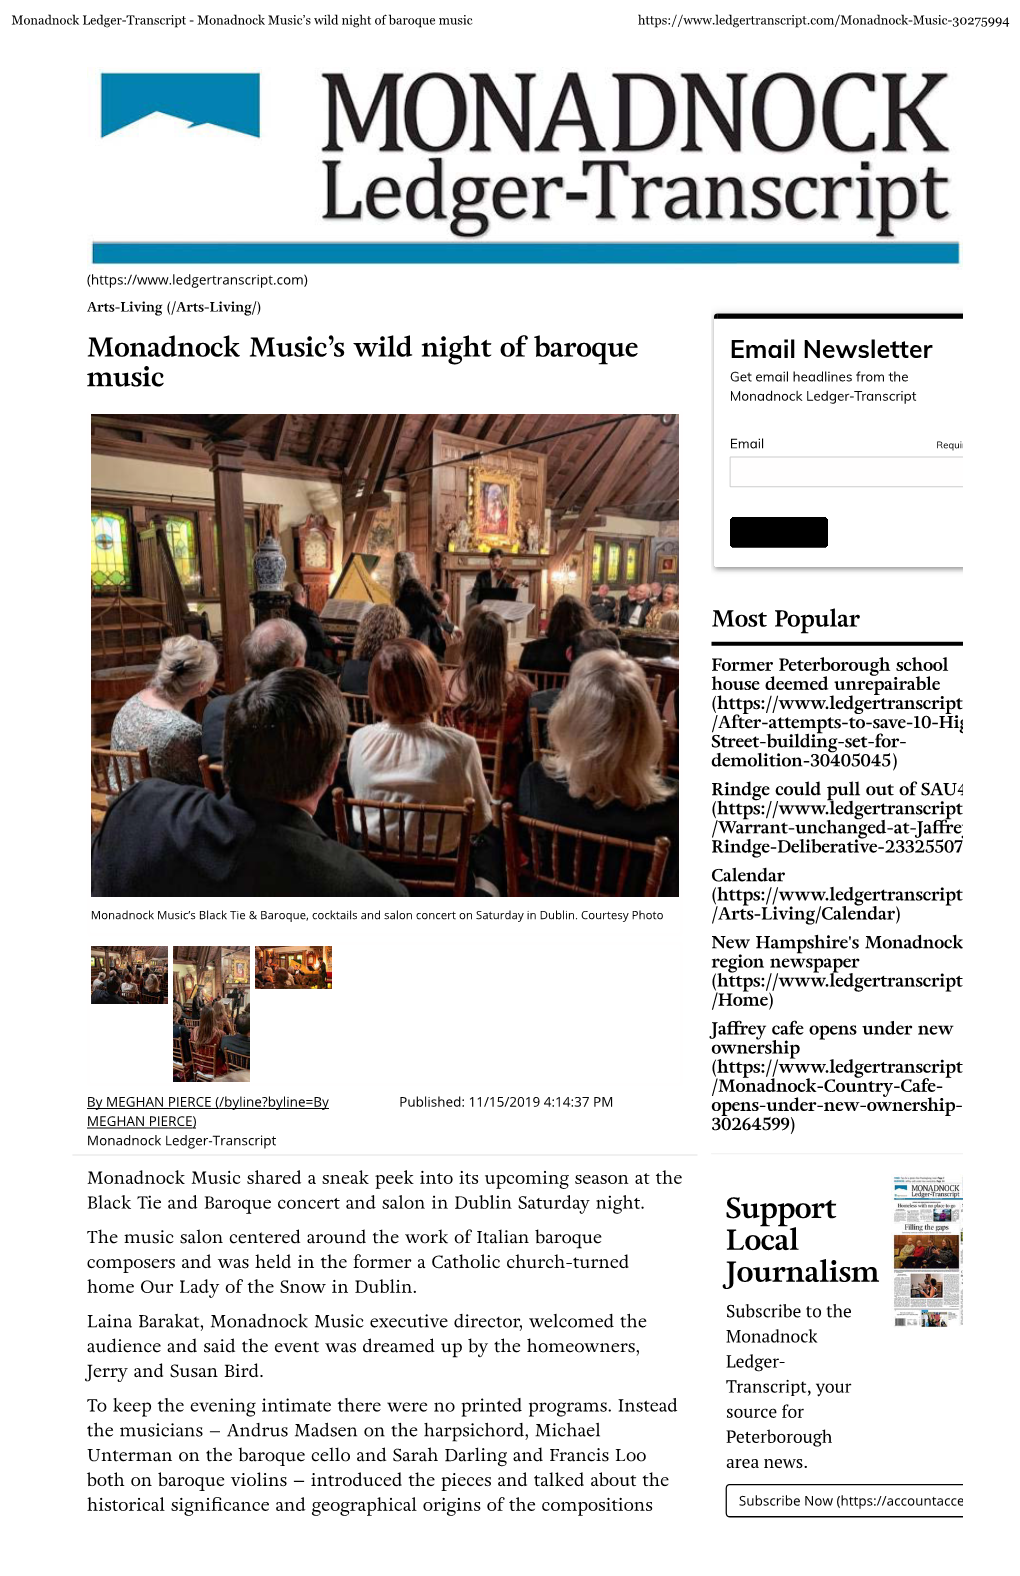 Monadnock Music's Wild Night of Baroque Music